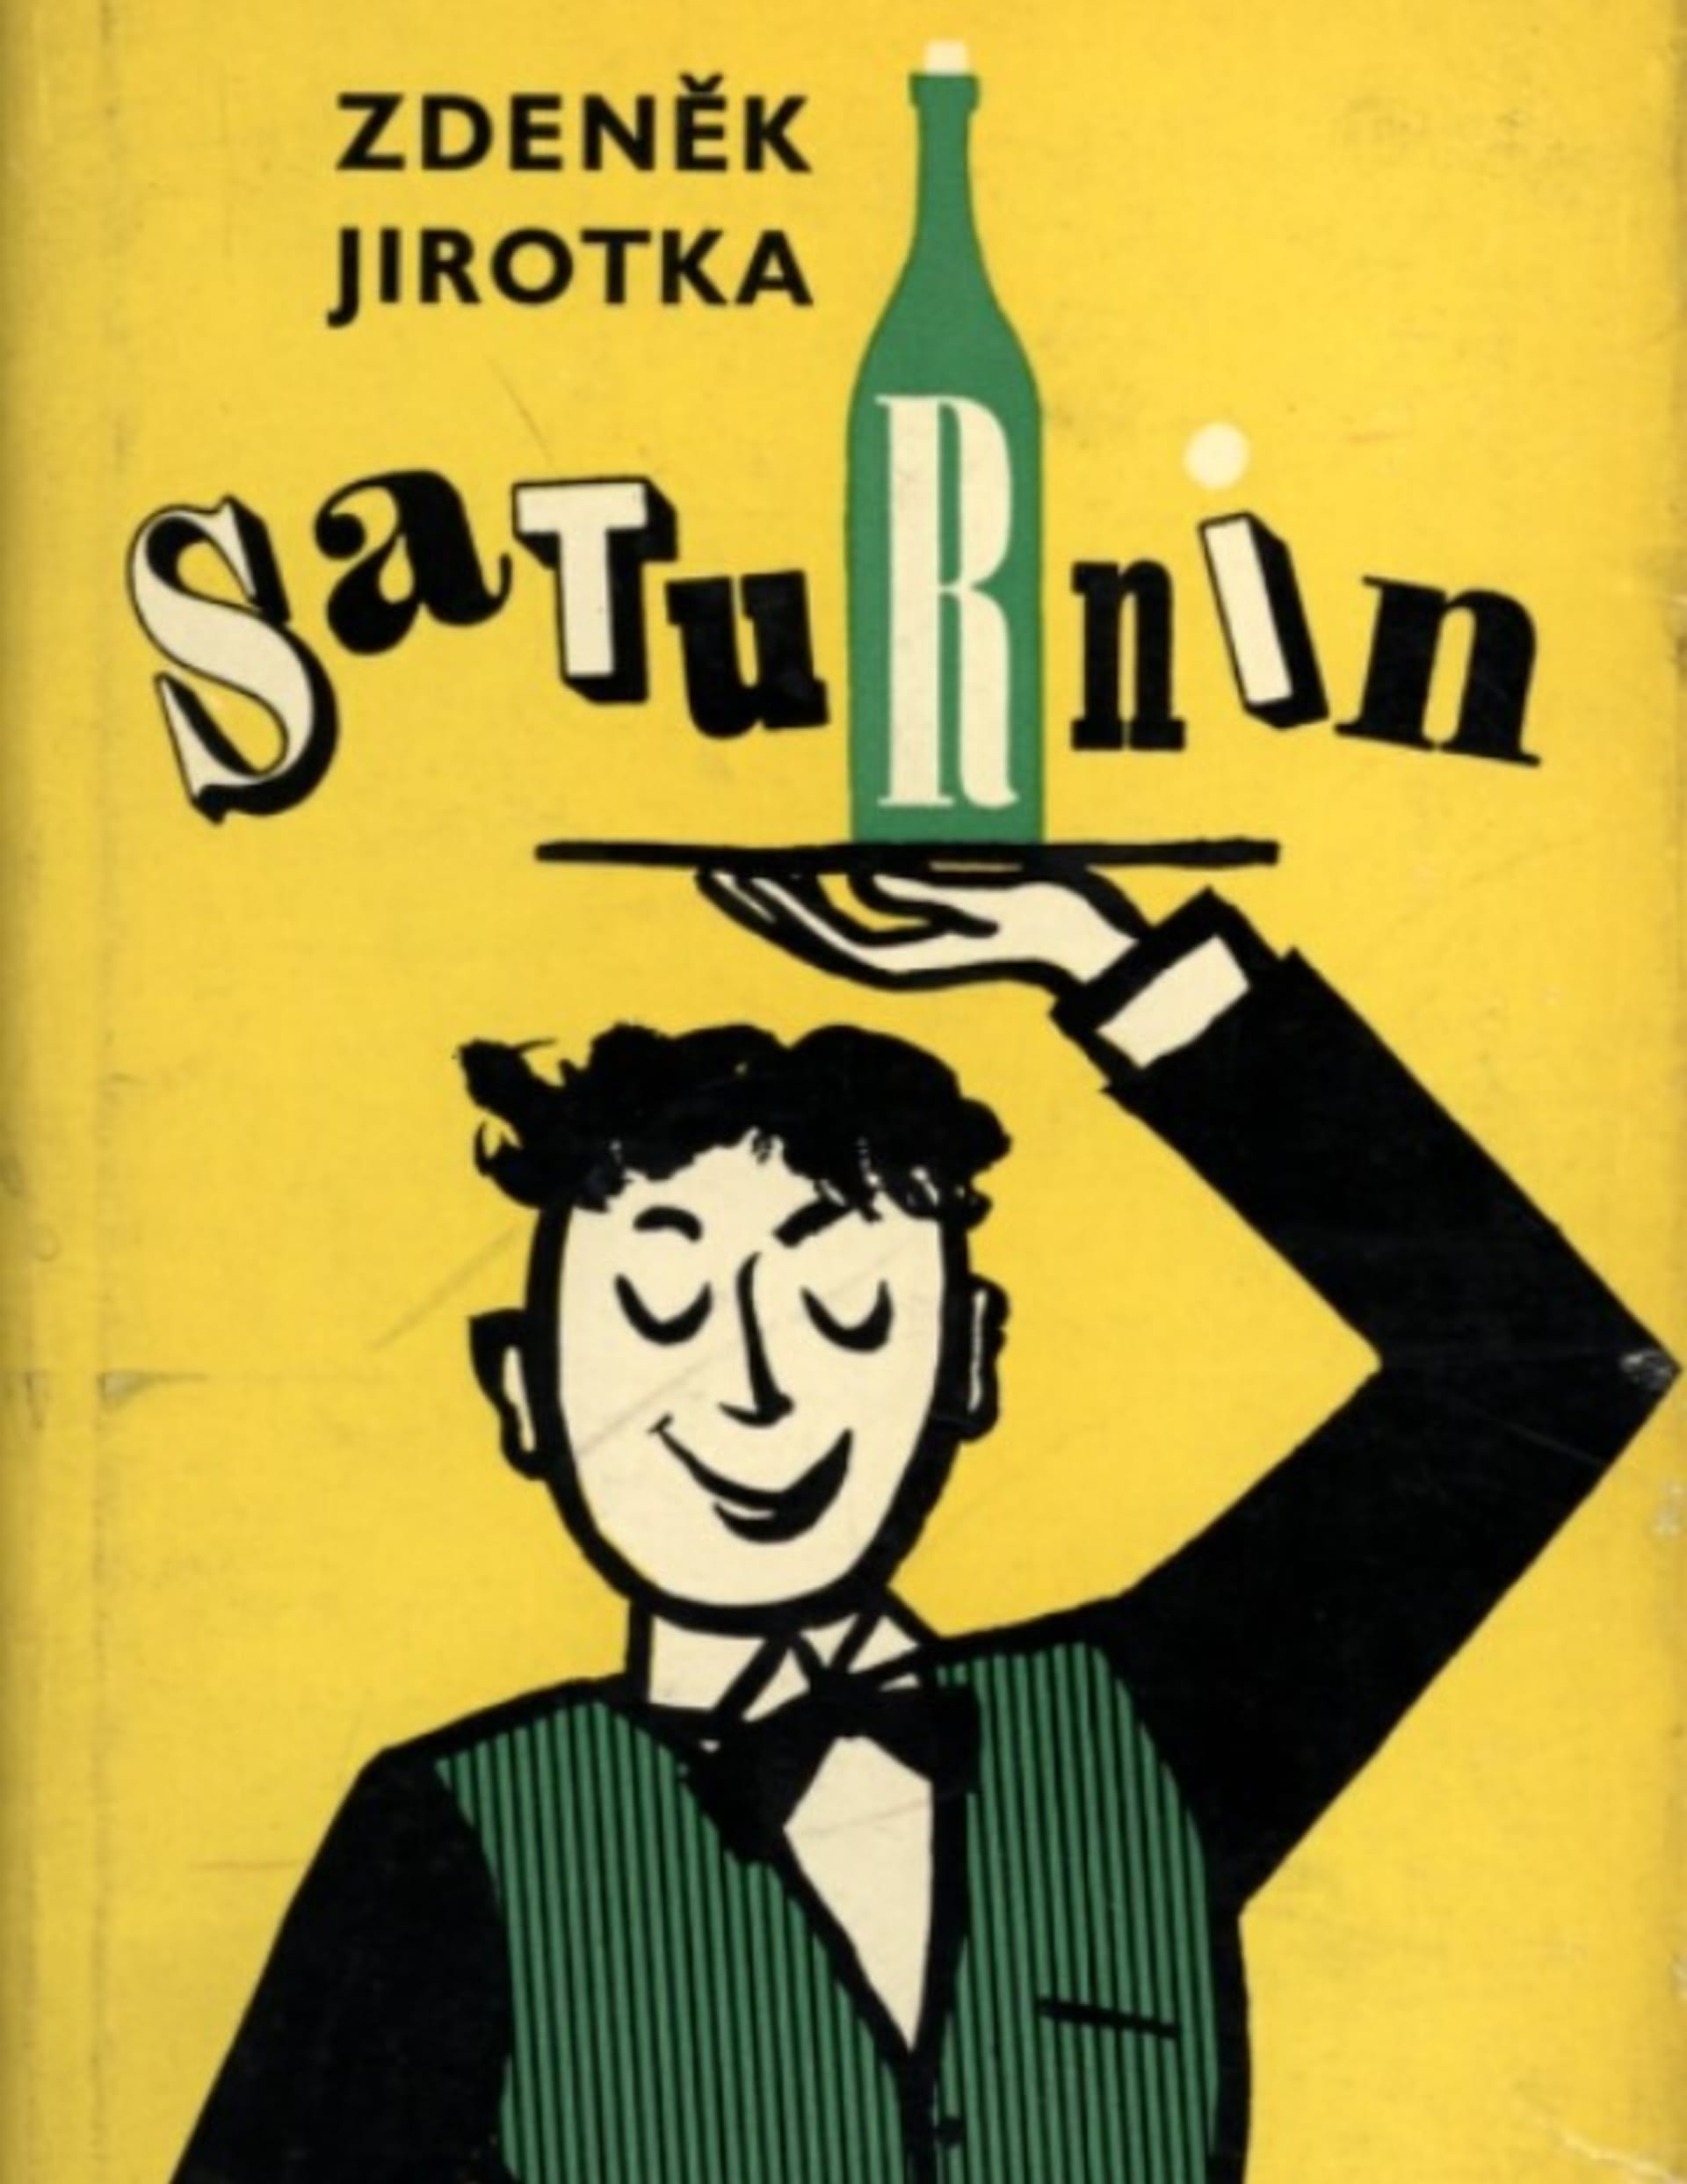 Obálka Saturnina z roku 1959.